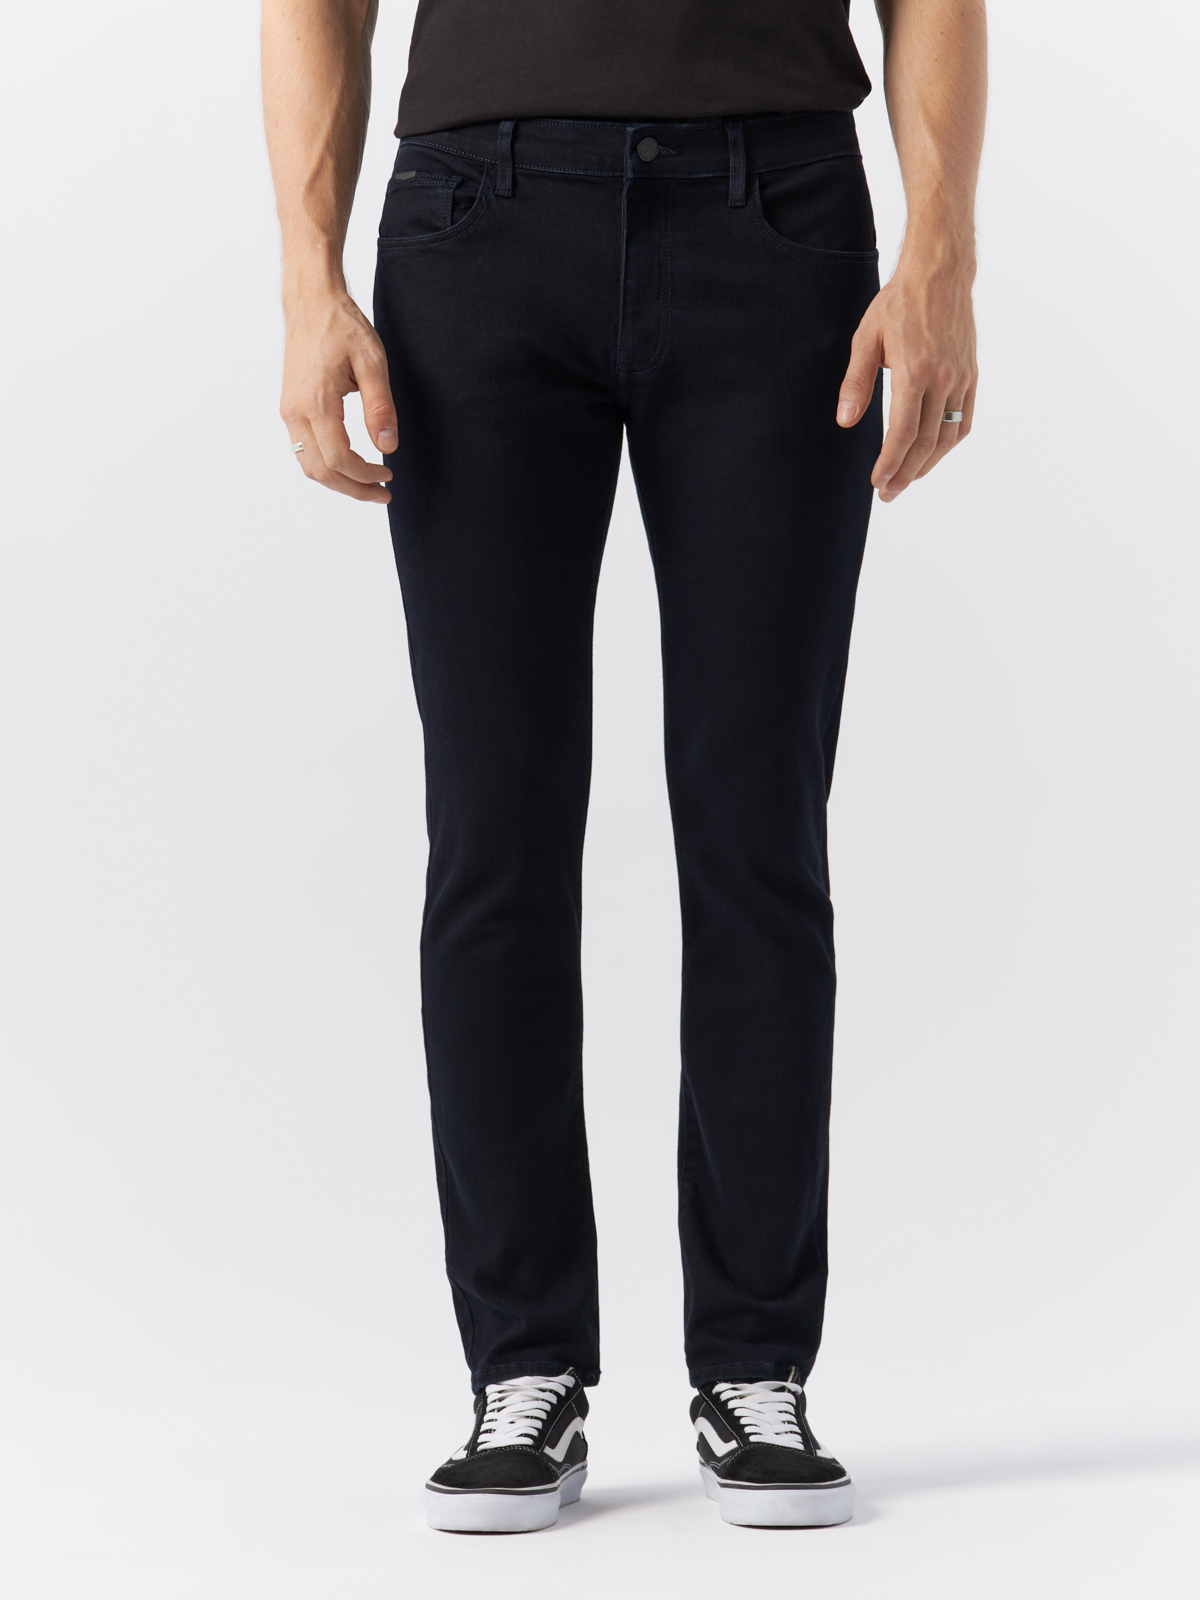 Джинсы Cross Jeans для мужчин, E 185-169, размер 31-32, чёрные